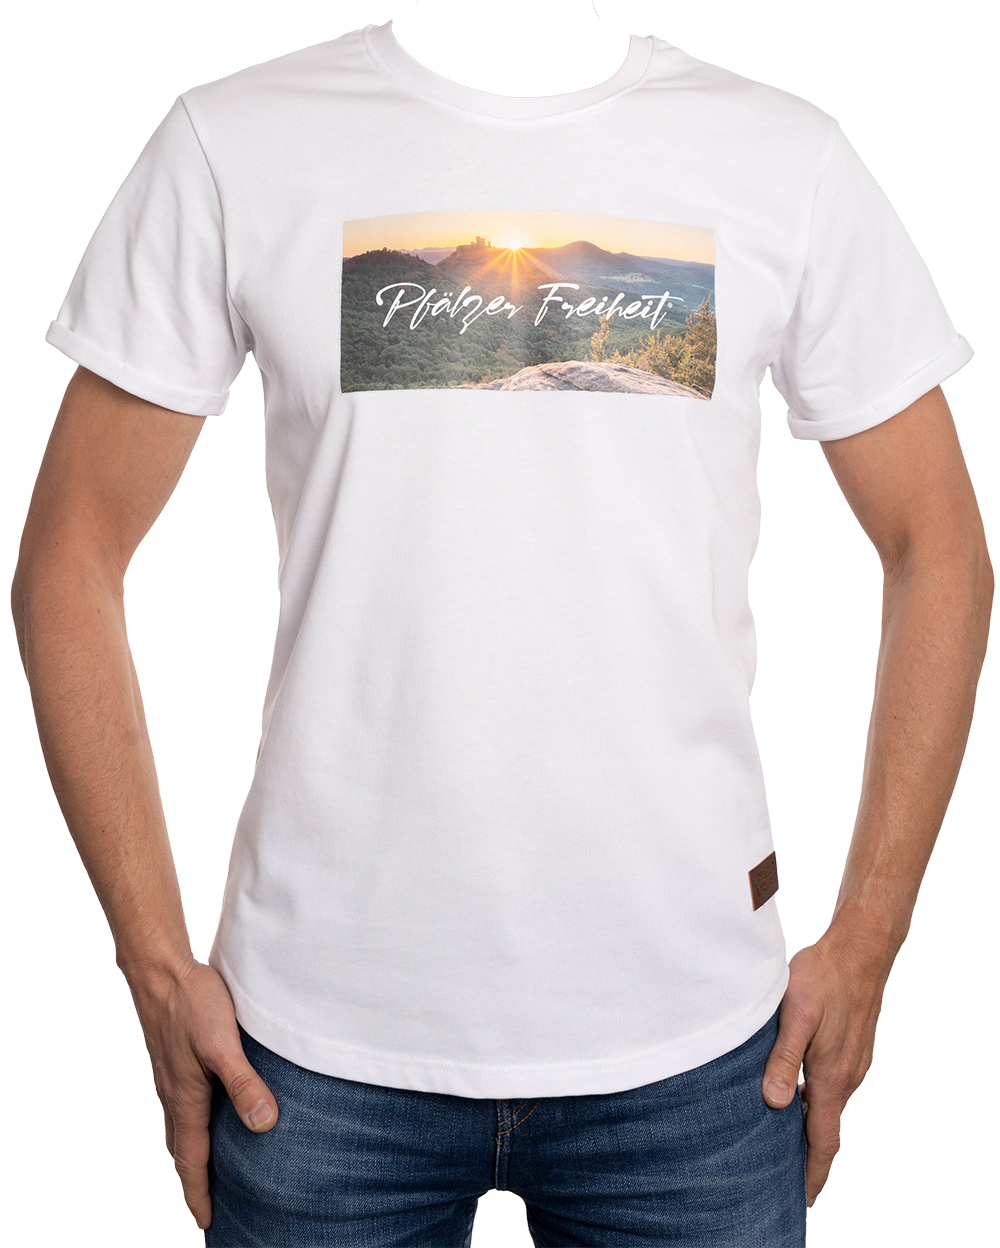 Herren T-Shirt "Pfälzer Freiheit" (Foto) - Pfälzer Freiheit